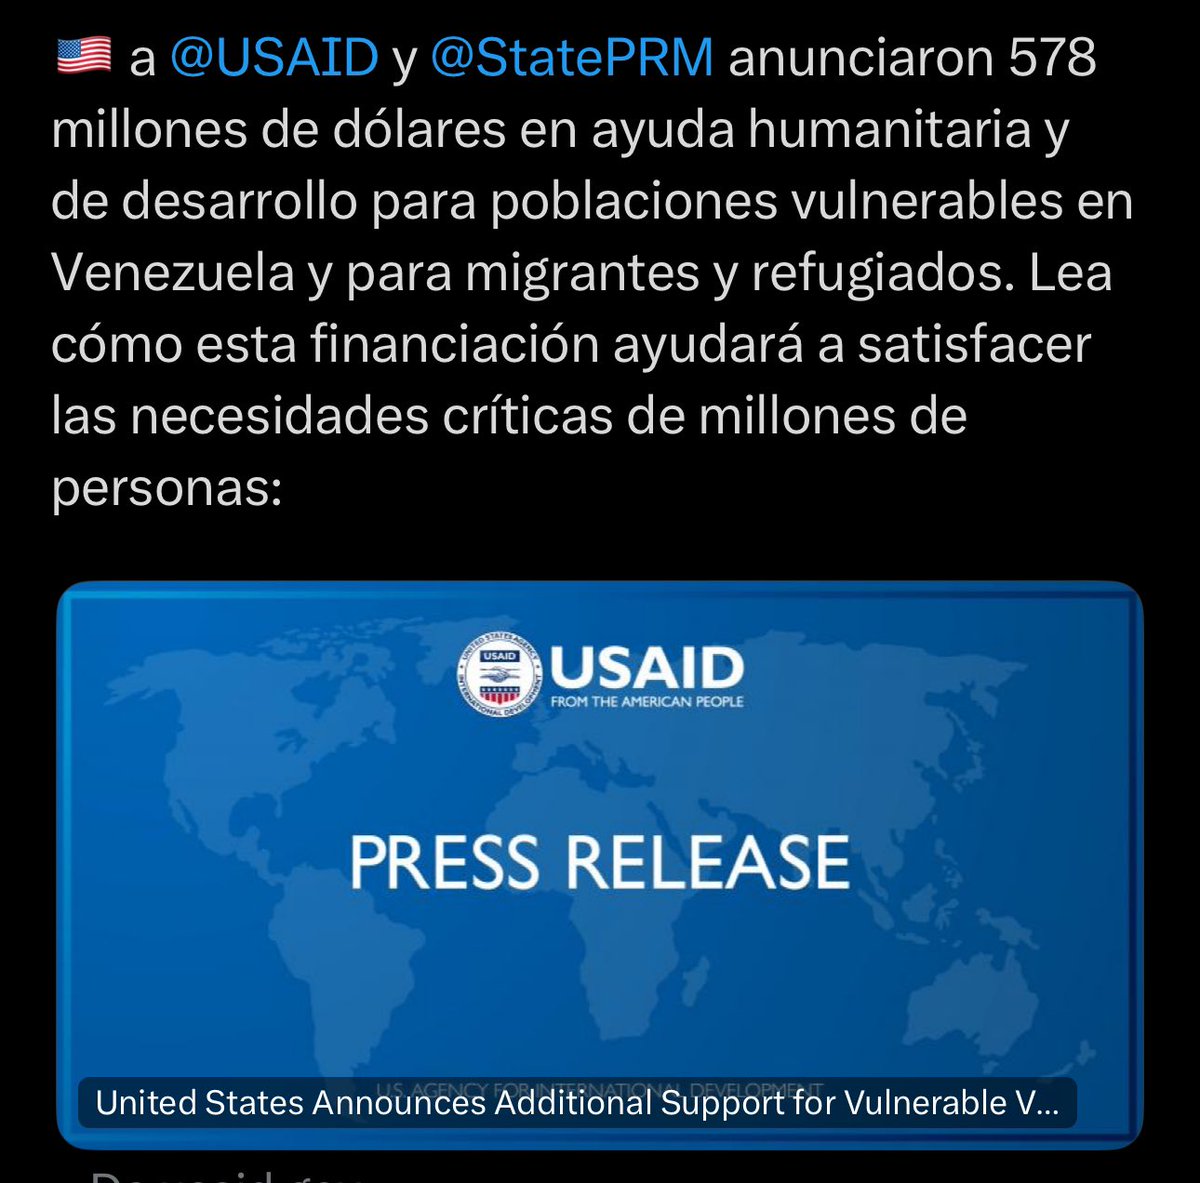 La @USAID es una agencia de operaciones políticas encubiertas. Farsantes y mentirosos, los EEUU instrumentaliza la migración en contra de Venezuela y promueve sanciones contra el pueblo venezolano. Como de costumbre esos dólares, dirigidos a la conspiración, irán a los bolsillos…